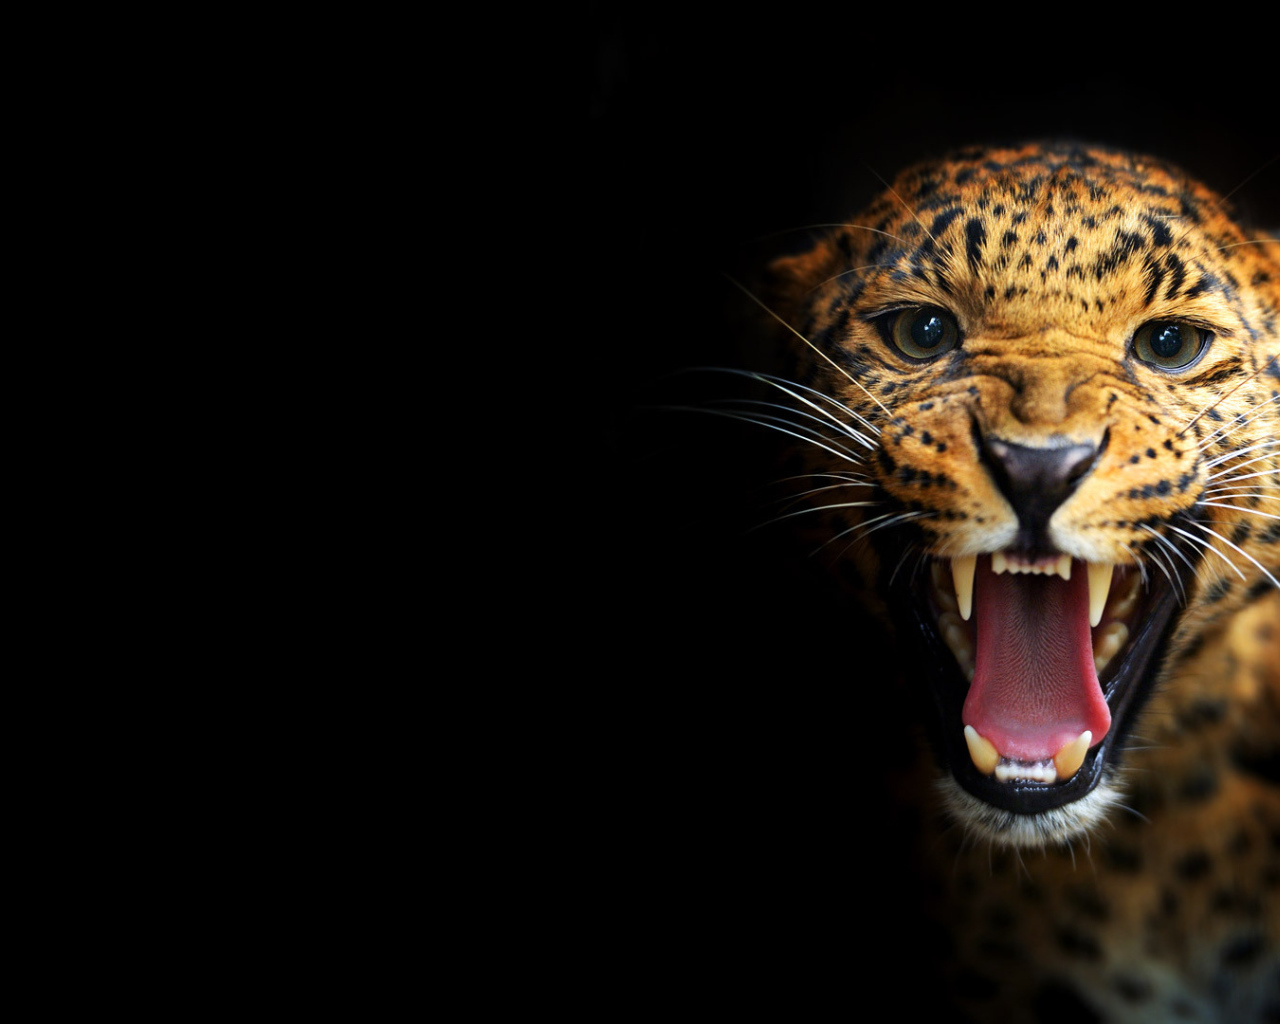 Леопард на черном фоне